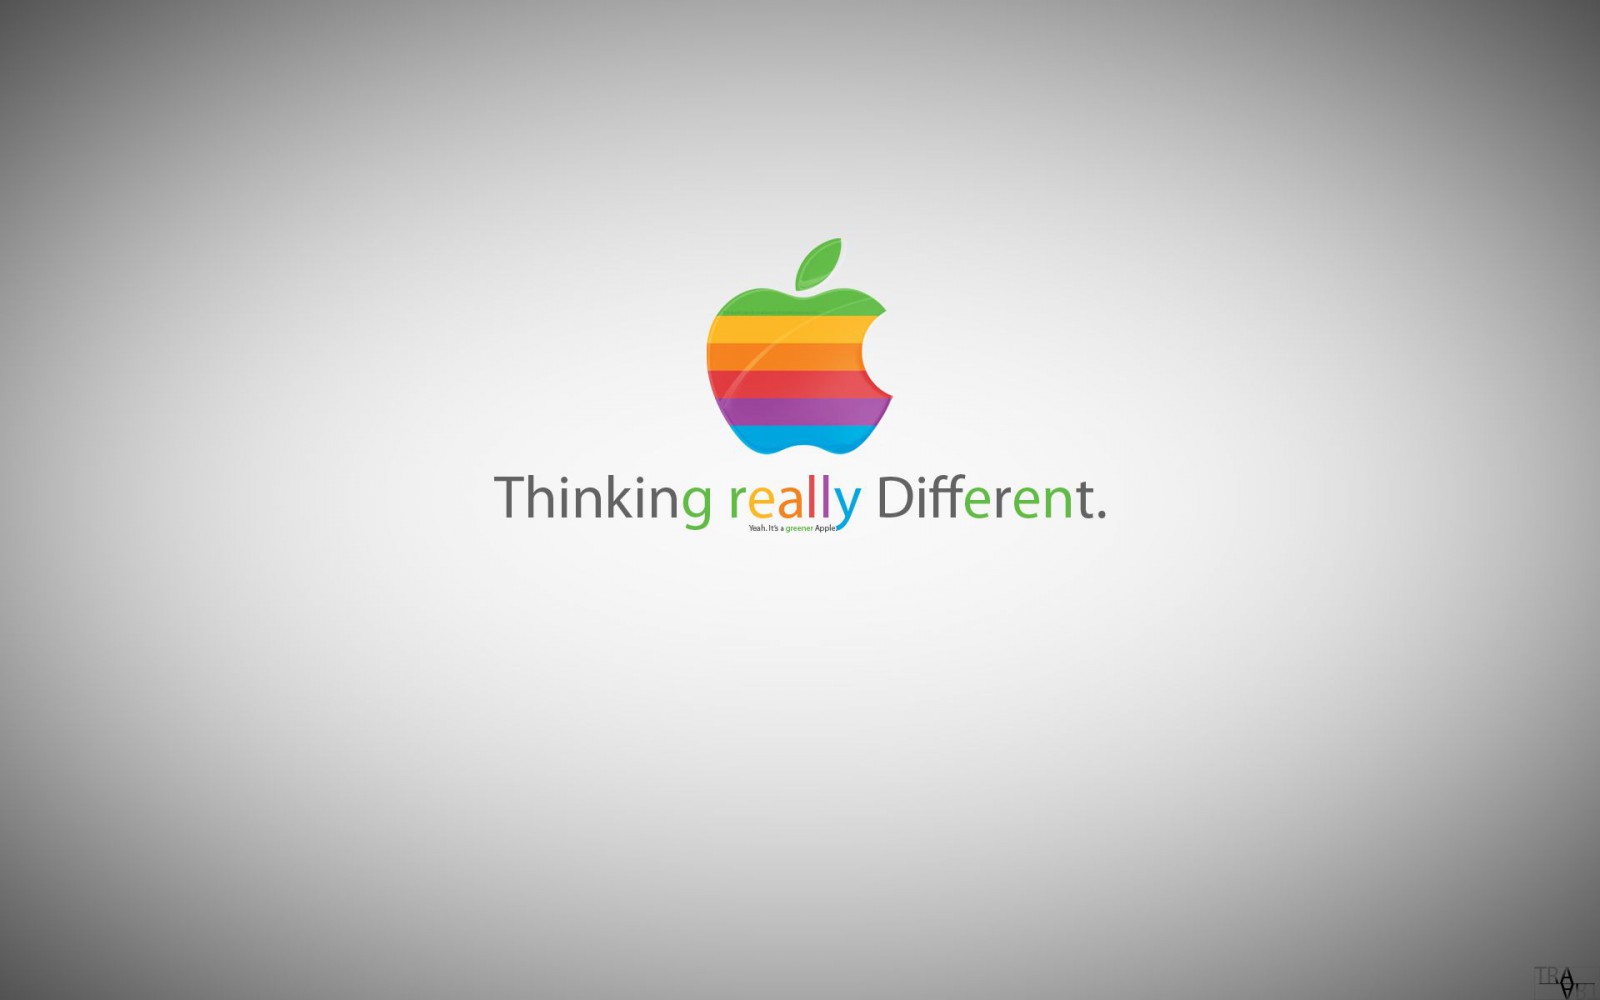 Cựu Giám đốc Bán hàng của Apple nói gì về Steve Jobs?